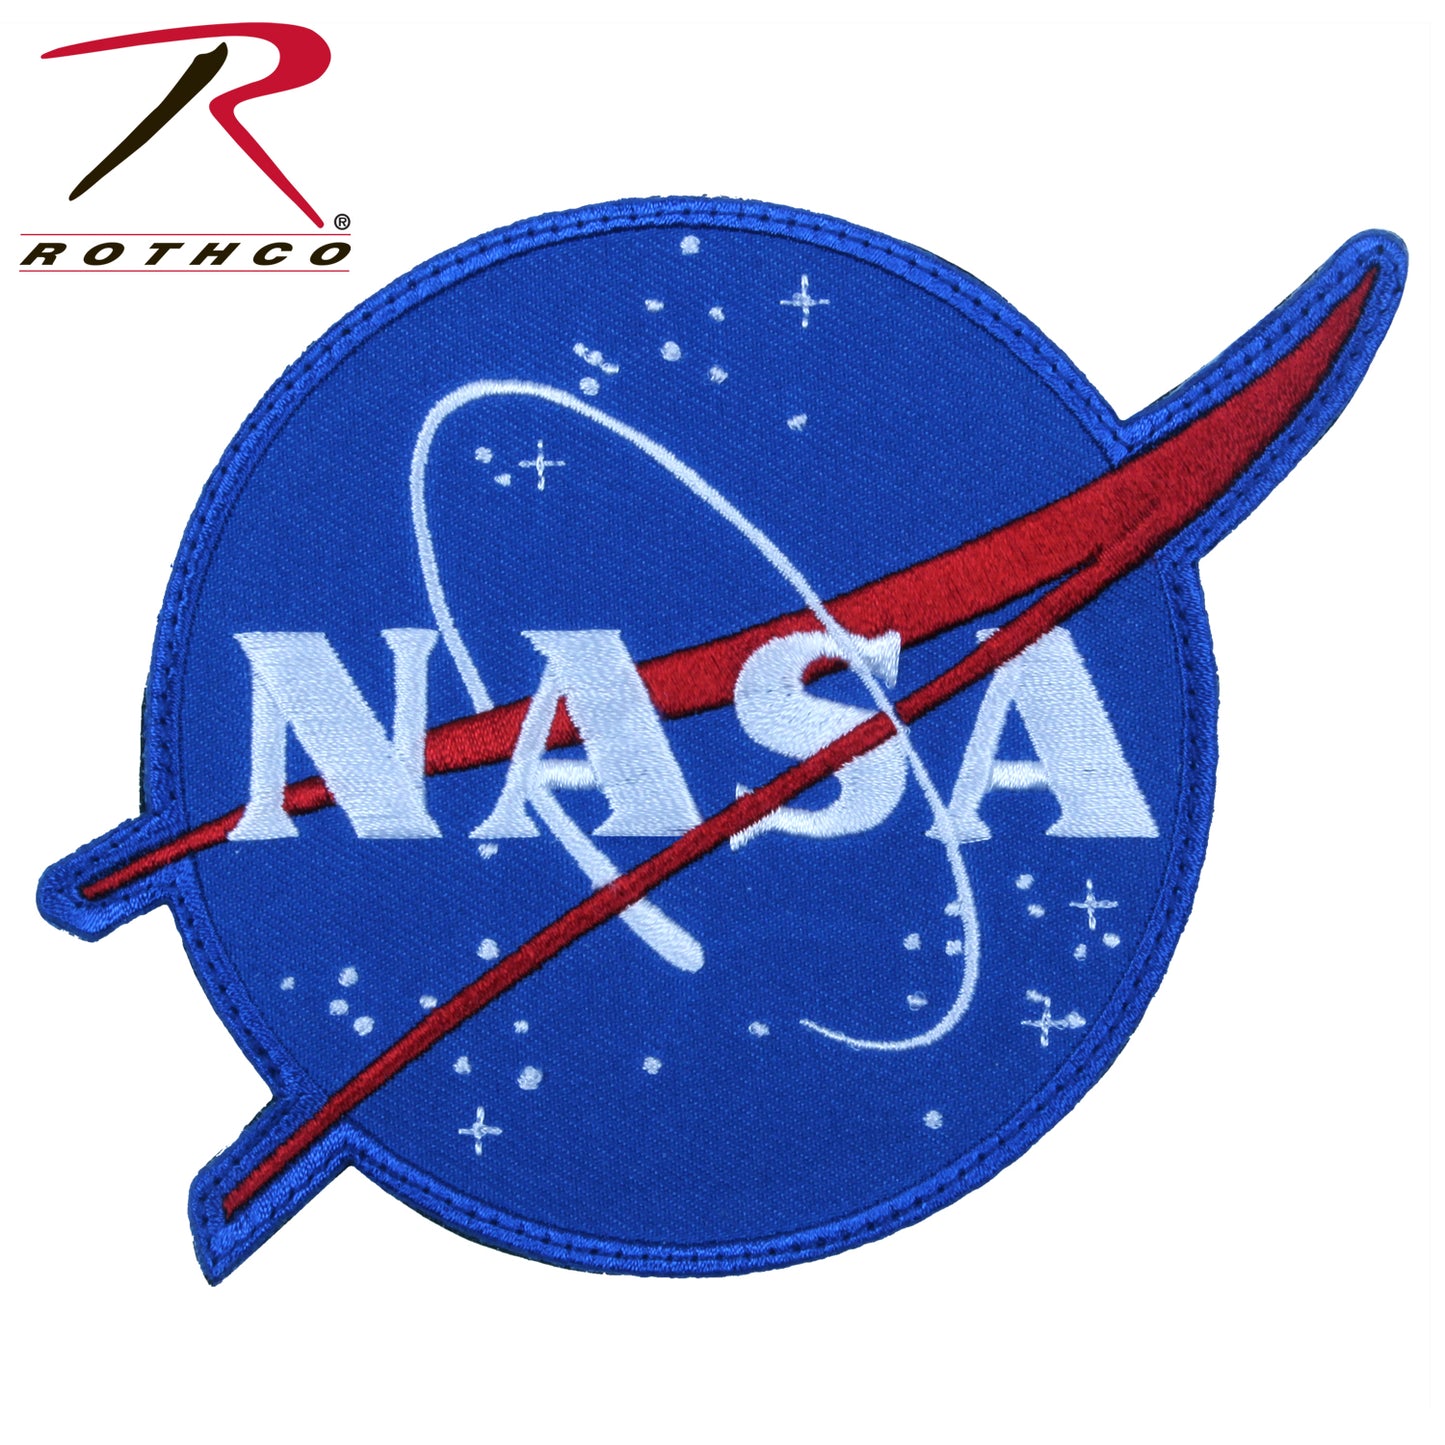 'NASA' Meatball Logo Velcro Patch